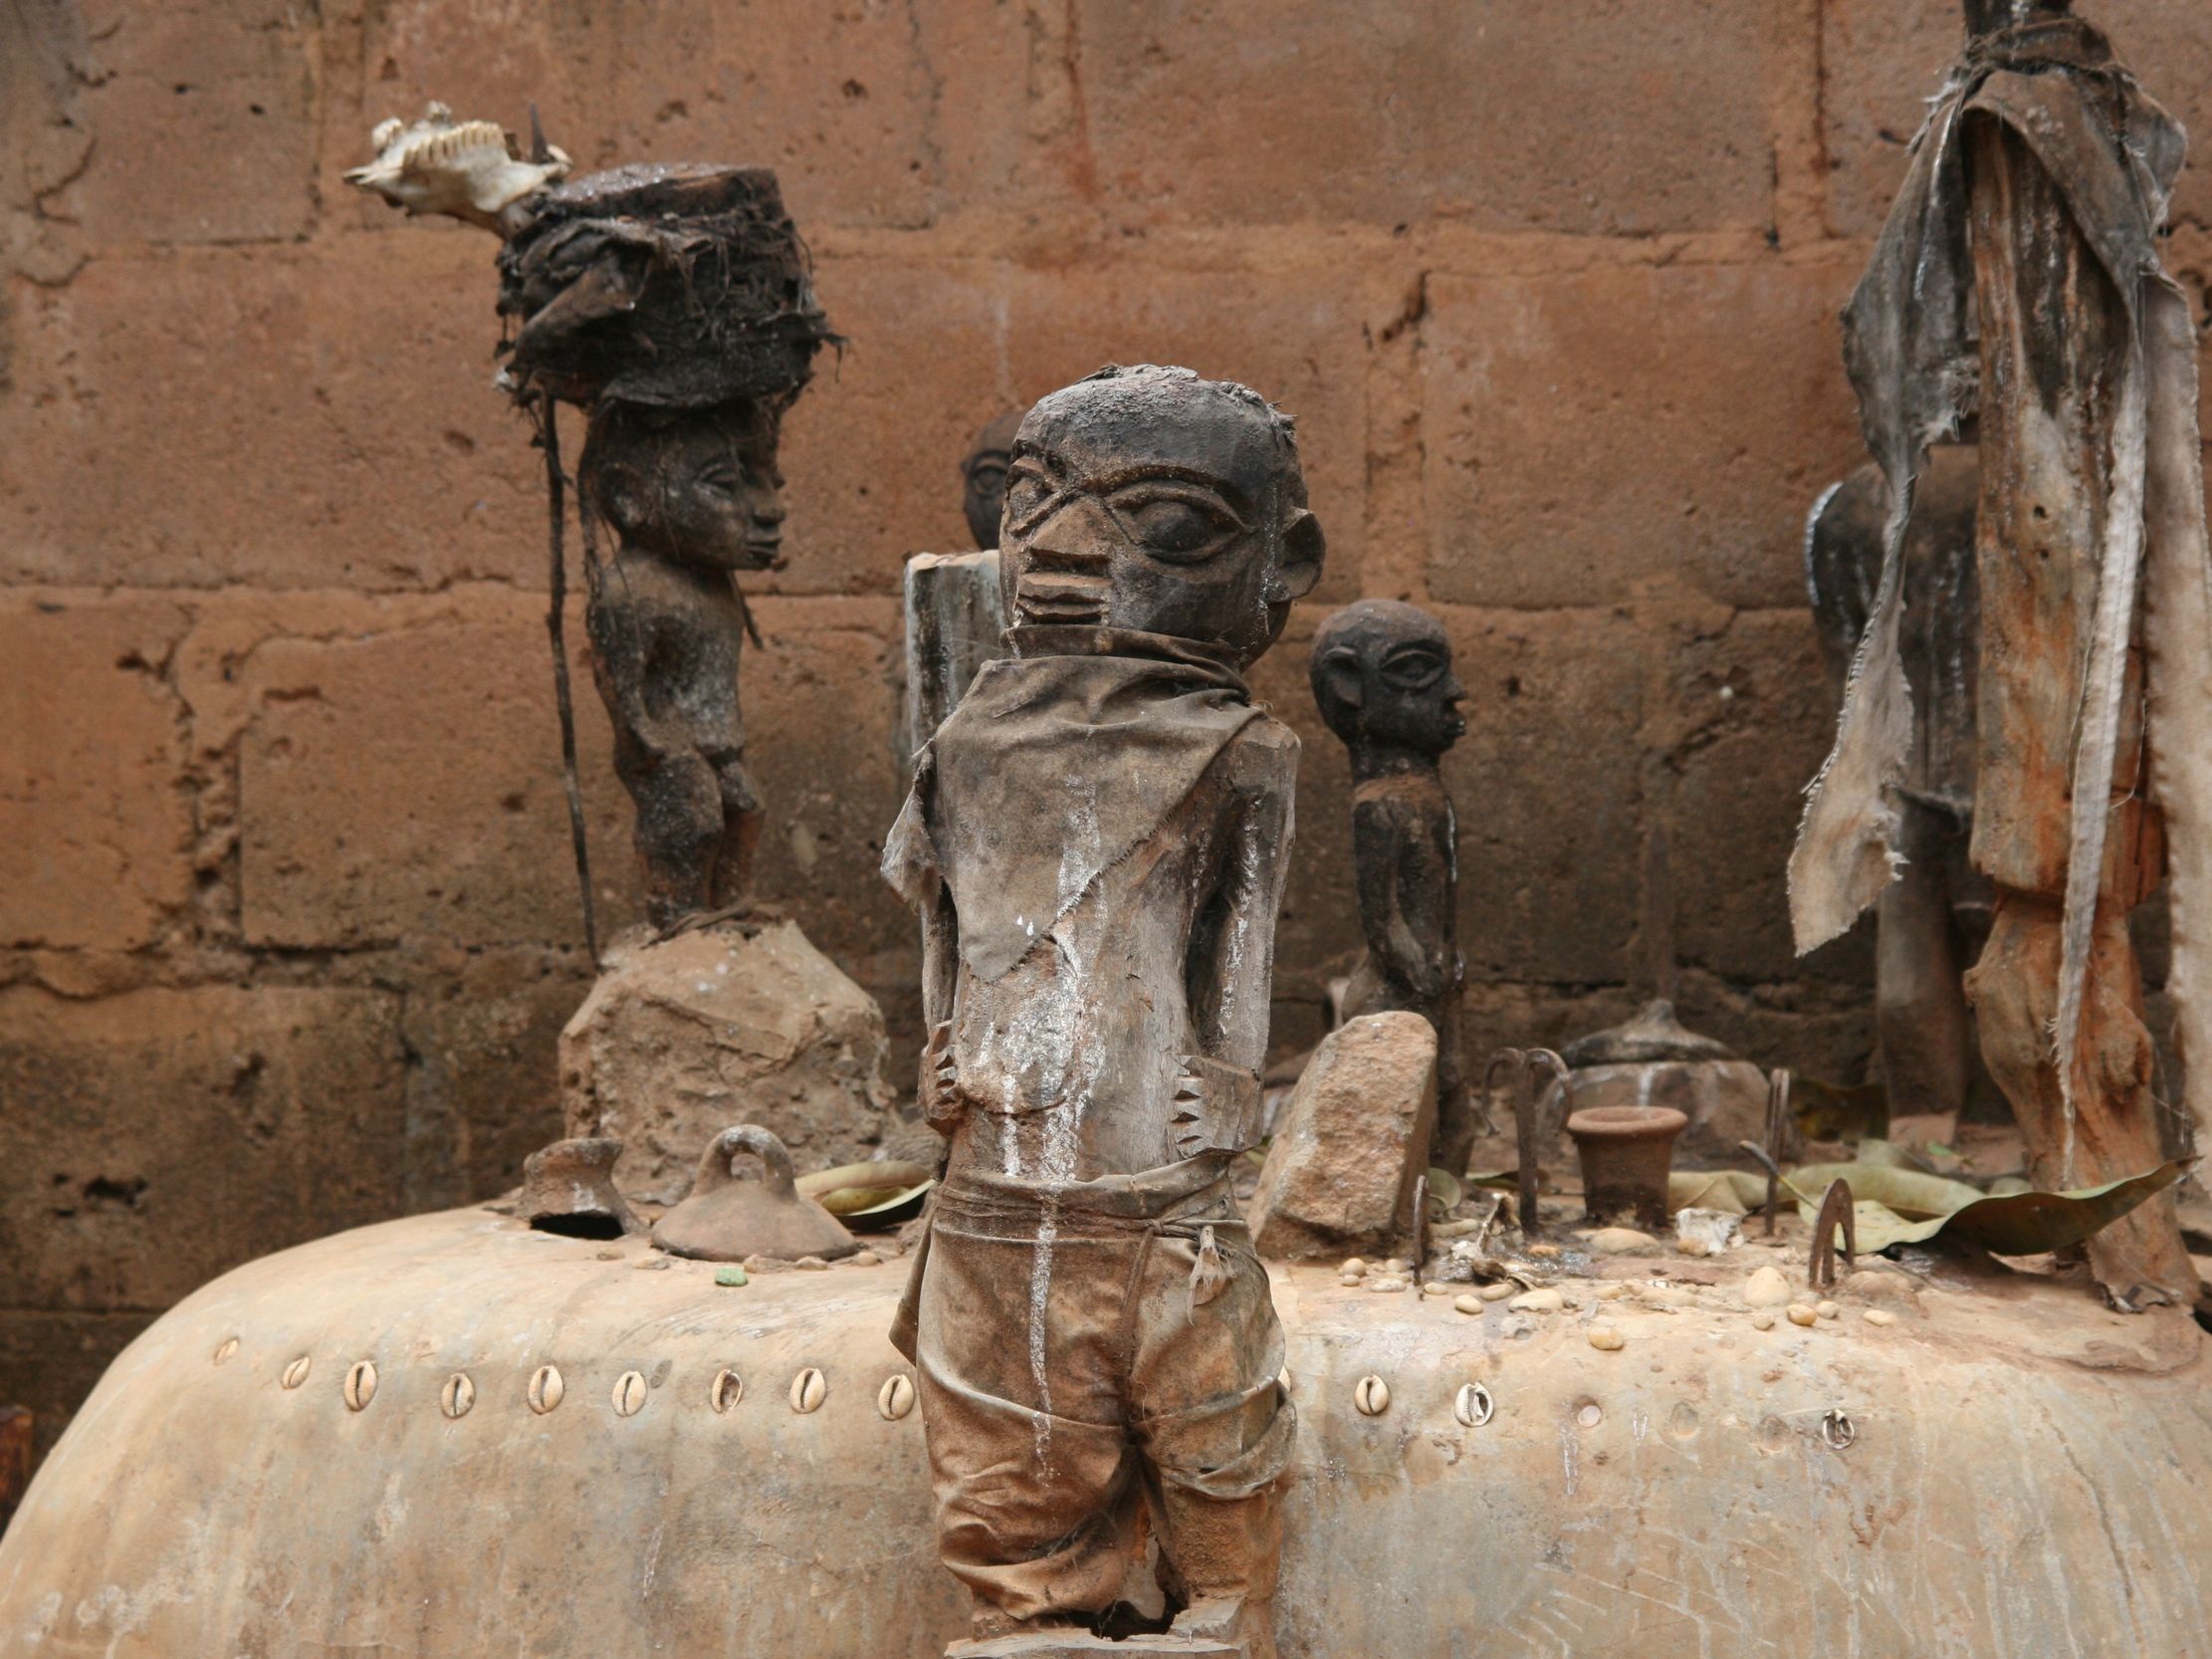 Beniński ołtarz wodu. Być może to z tego afrykańskiego kraju pochodzą zombie (fot. Dominik Schwarz, lic. CC BY-SA 3.0).